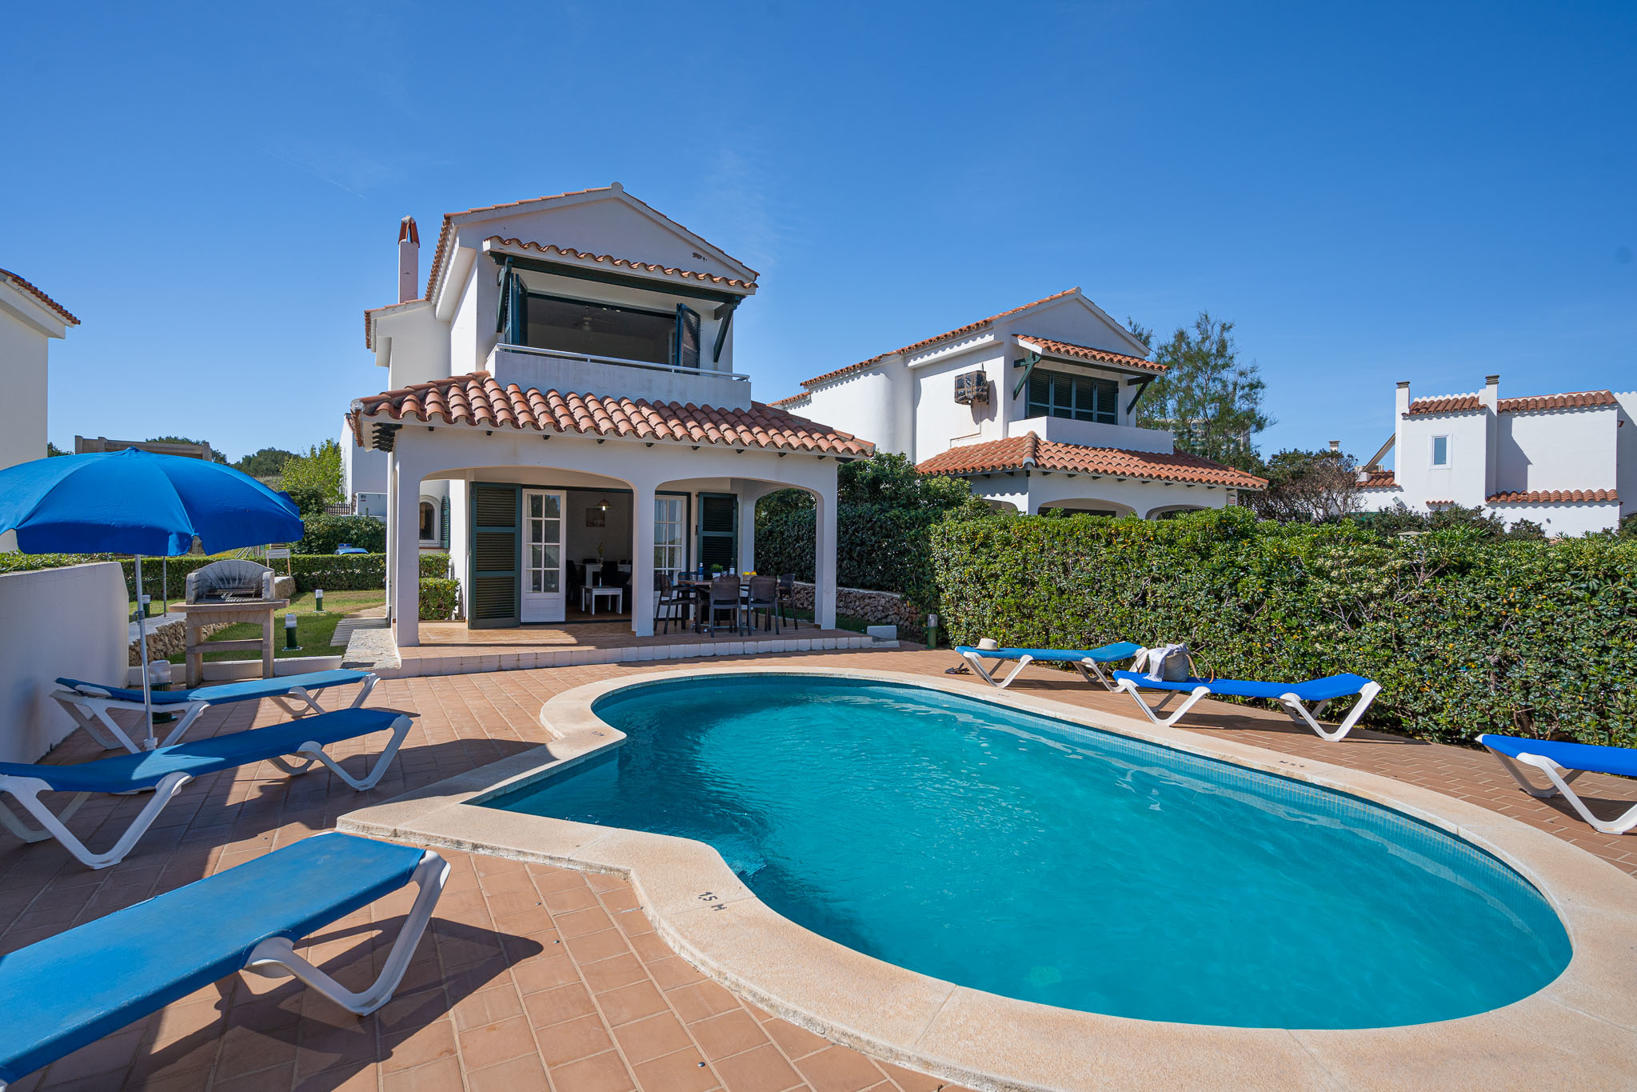 Villa Las Marinas 2 - View of the Villa Las Marinas 2 - Villa with pool - Arenal den Castell - Menorca